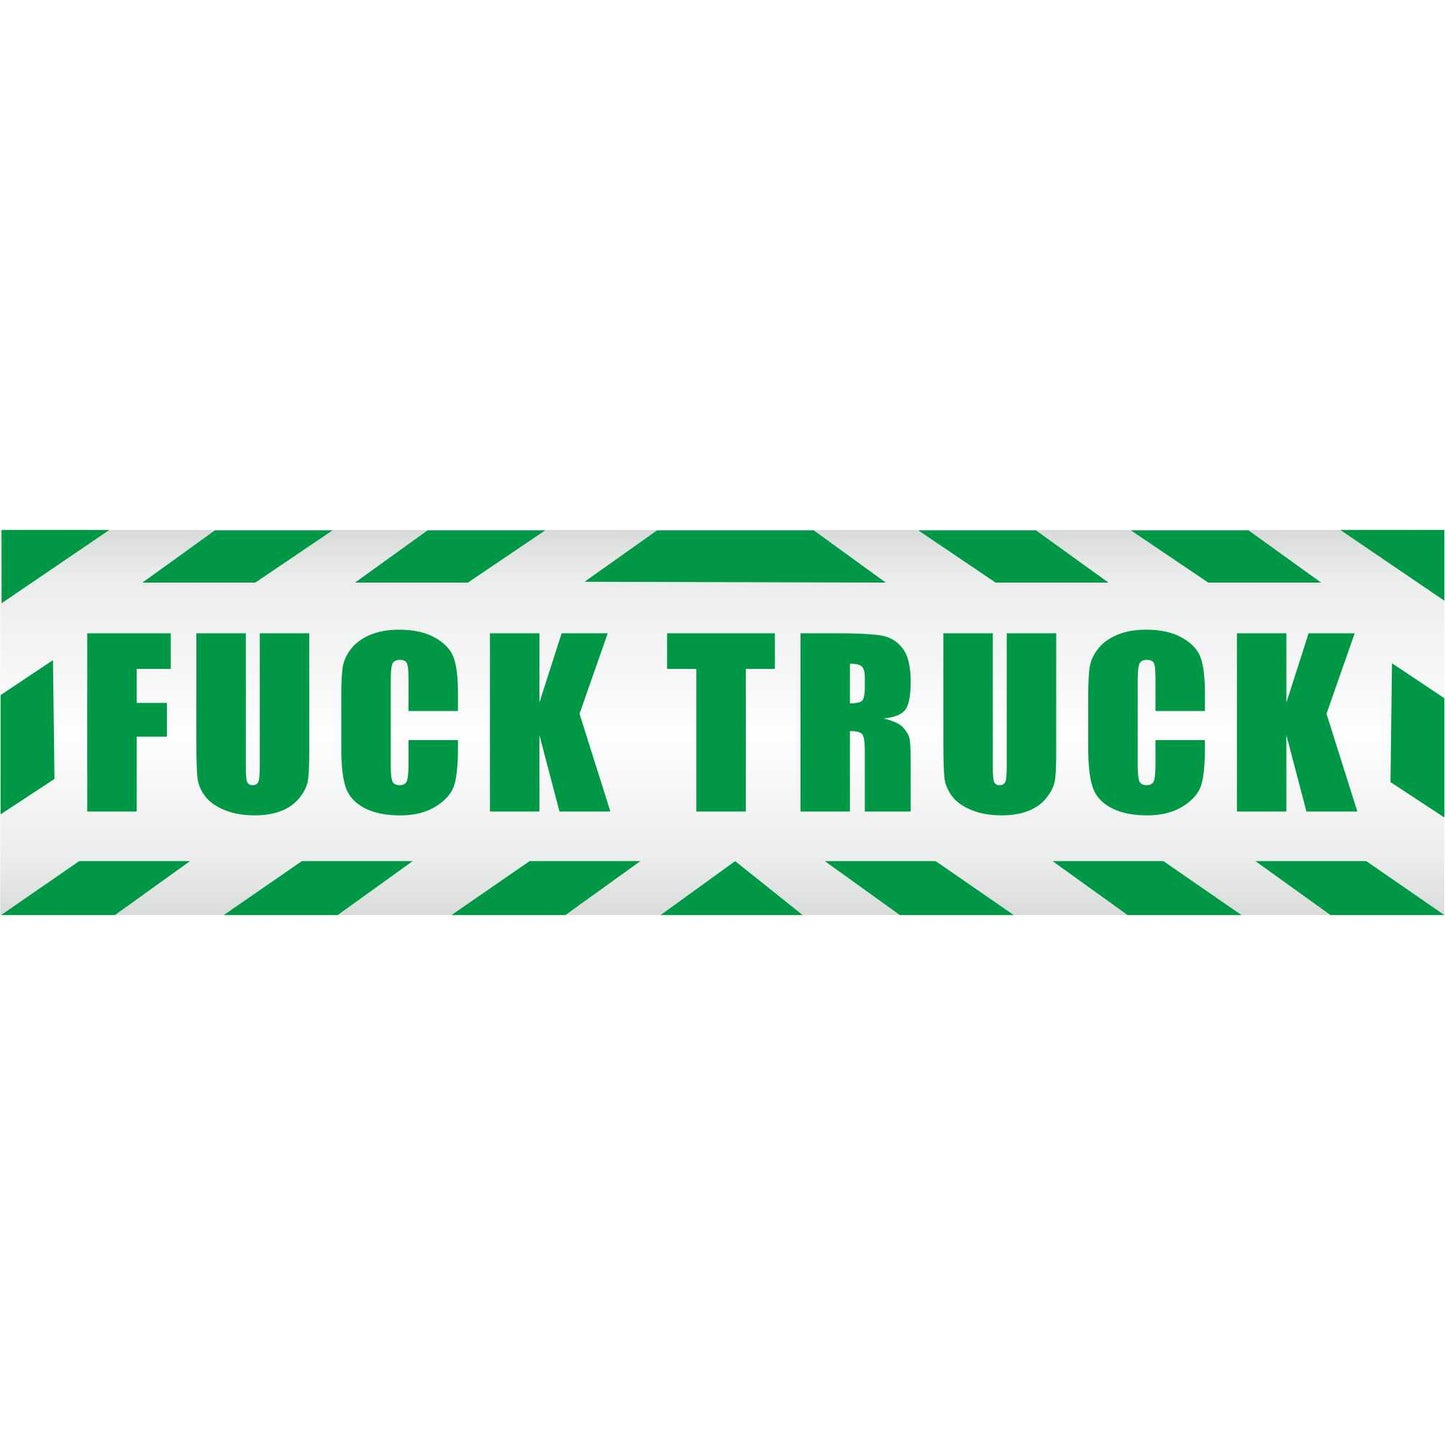 Magnetschild - Fuck truck Bangbus - Magnetfolie für Auto - LKW - Truck - Baustelle - Firma